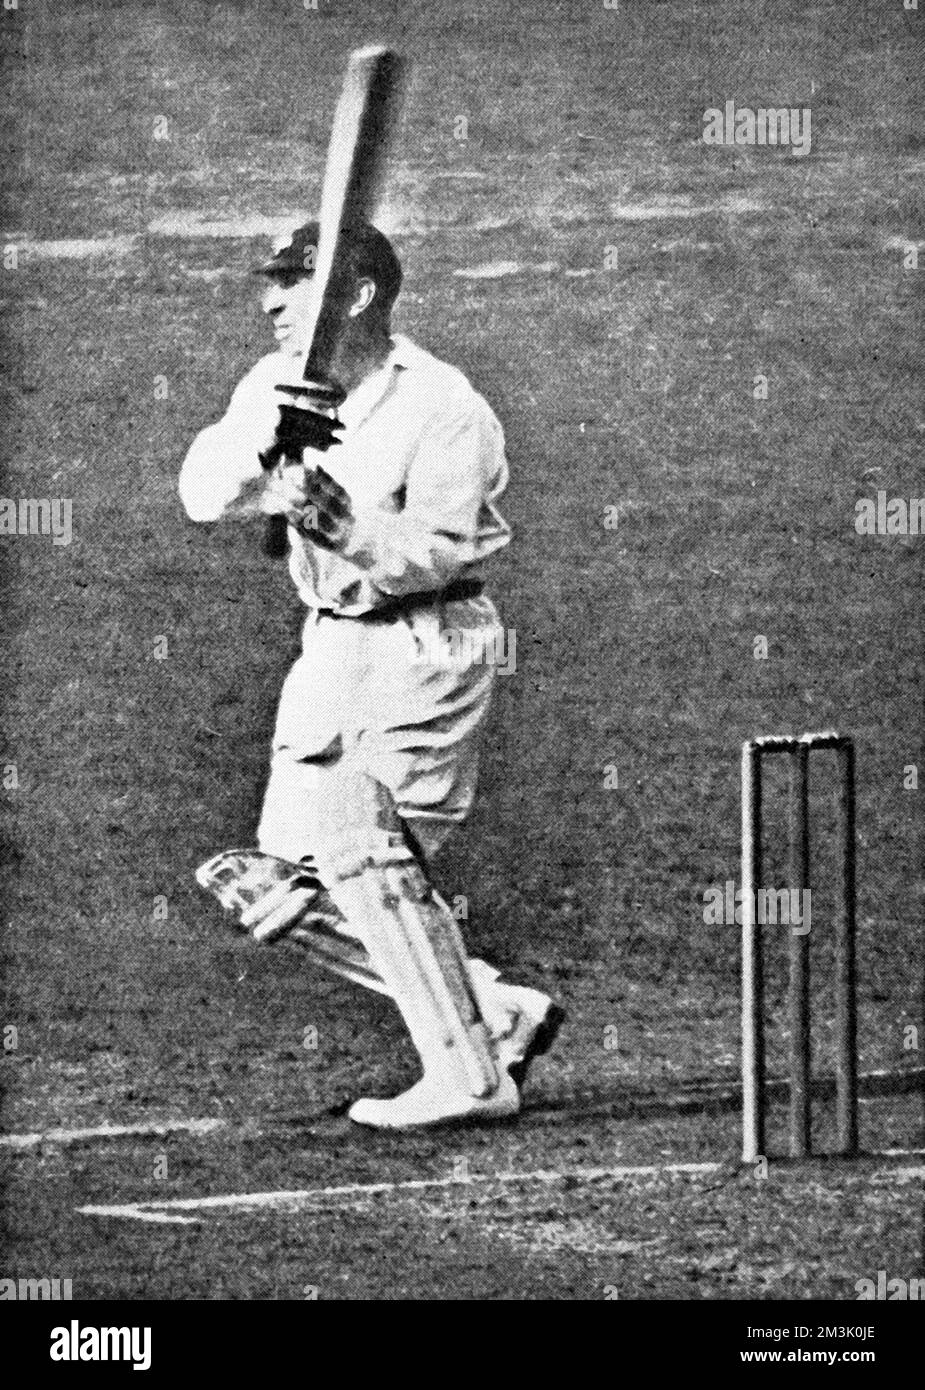 George Hirst (1871-1954), Yorkshire und England Cricketspieler, die einen starken Schuss auf den Beinen spielen. Hirst war einer der besten Allrounder von Yorkshire, erzielte 36.185 Läufe und nahm 2.719 Wickets mit. 1934 Stockfoto